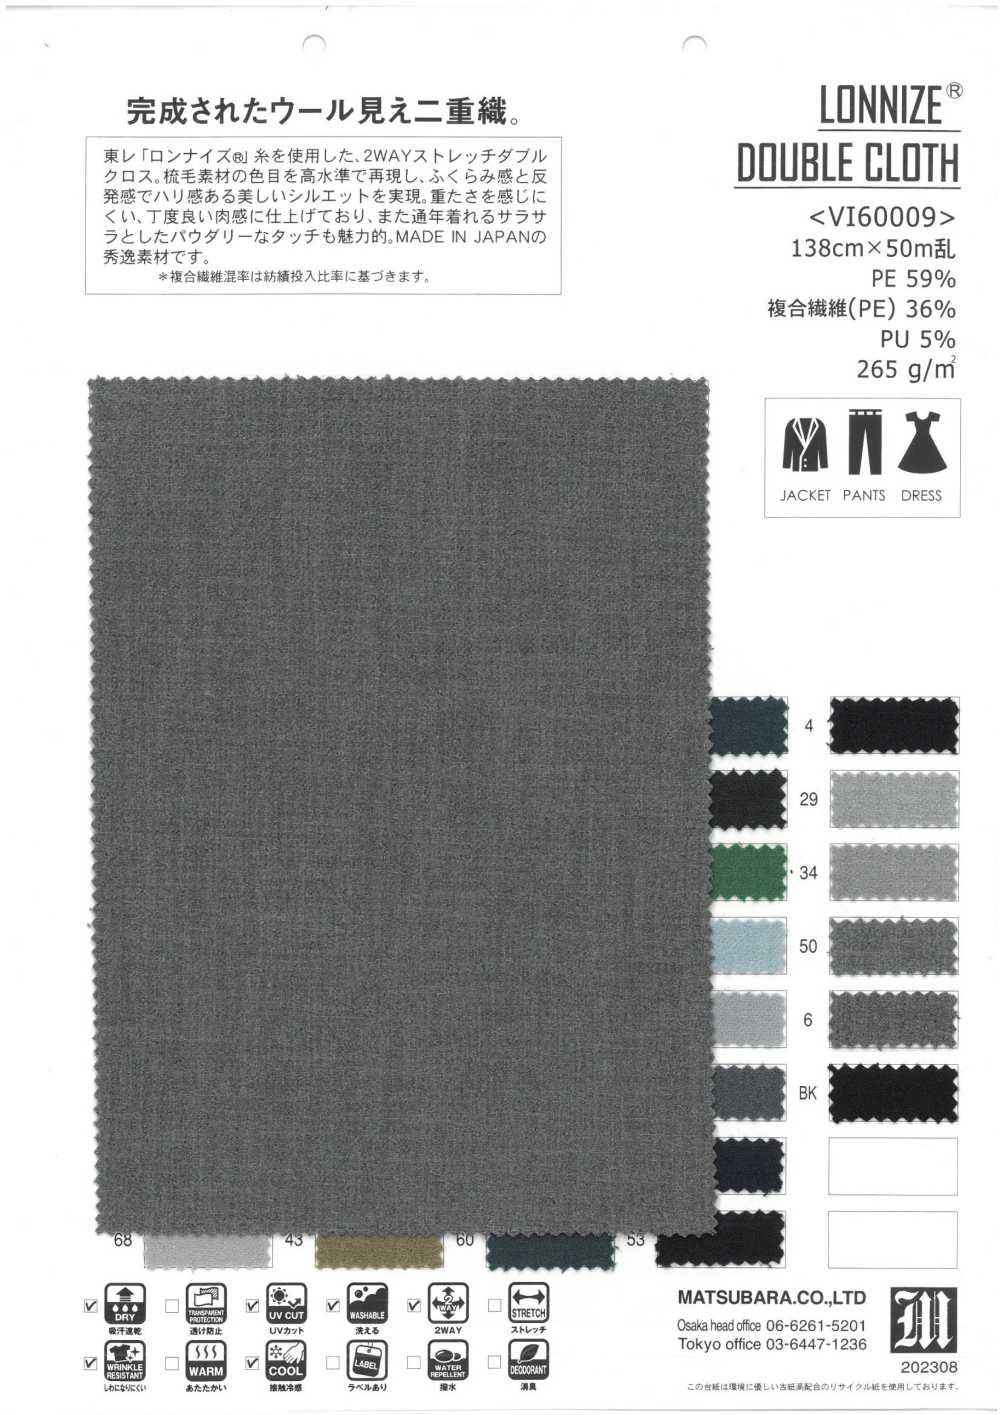 VI60009 TISSU DOUBLE LONNIZE®[Fabrication De Textile] Matsubara